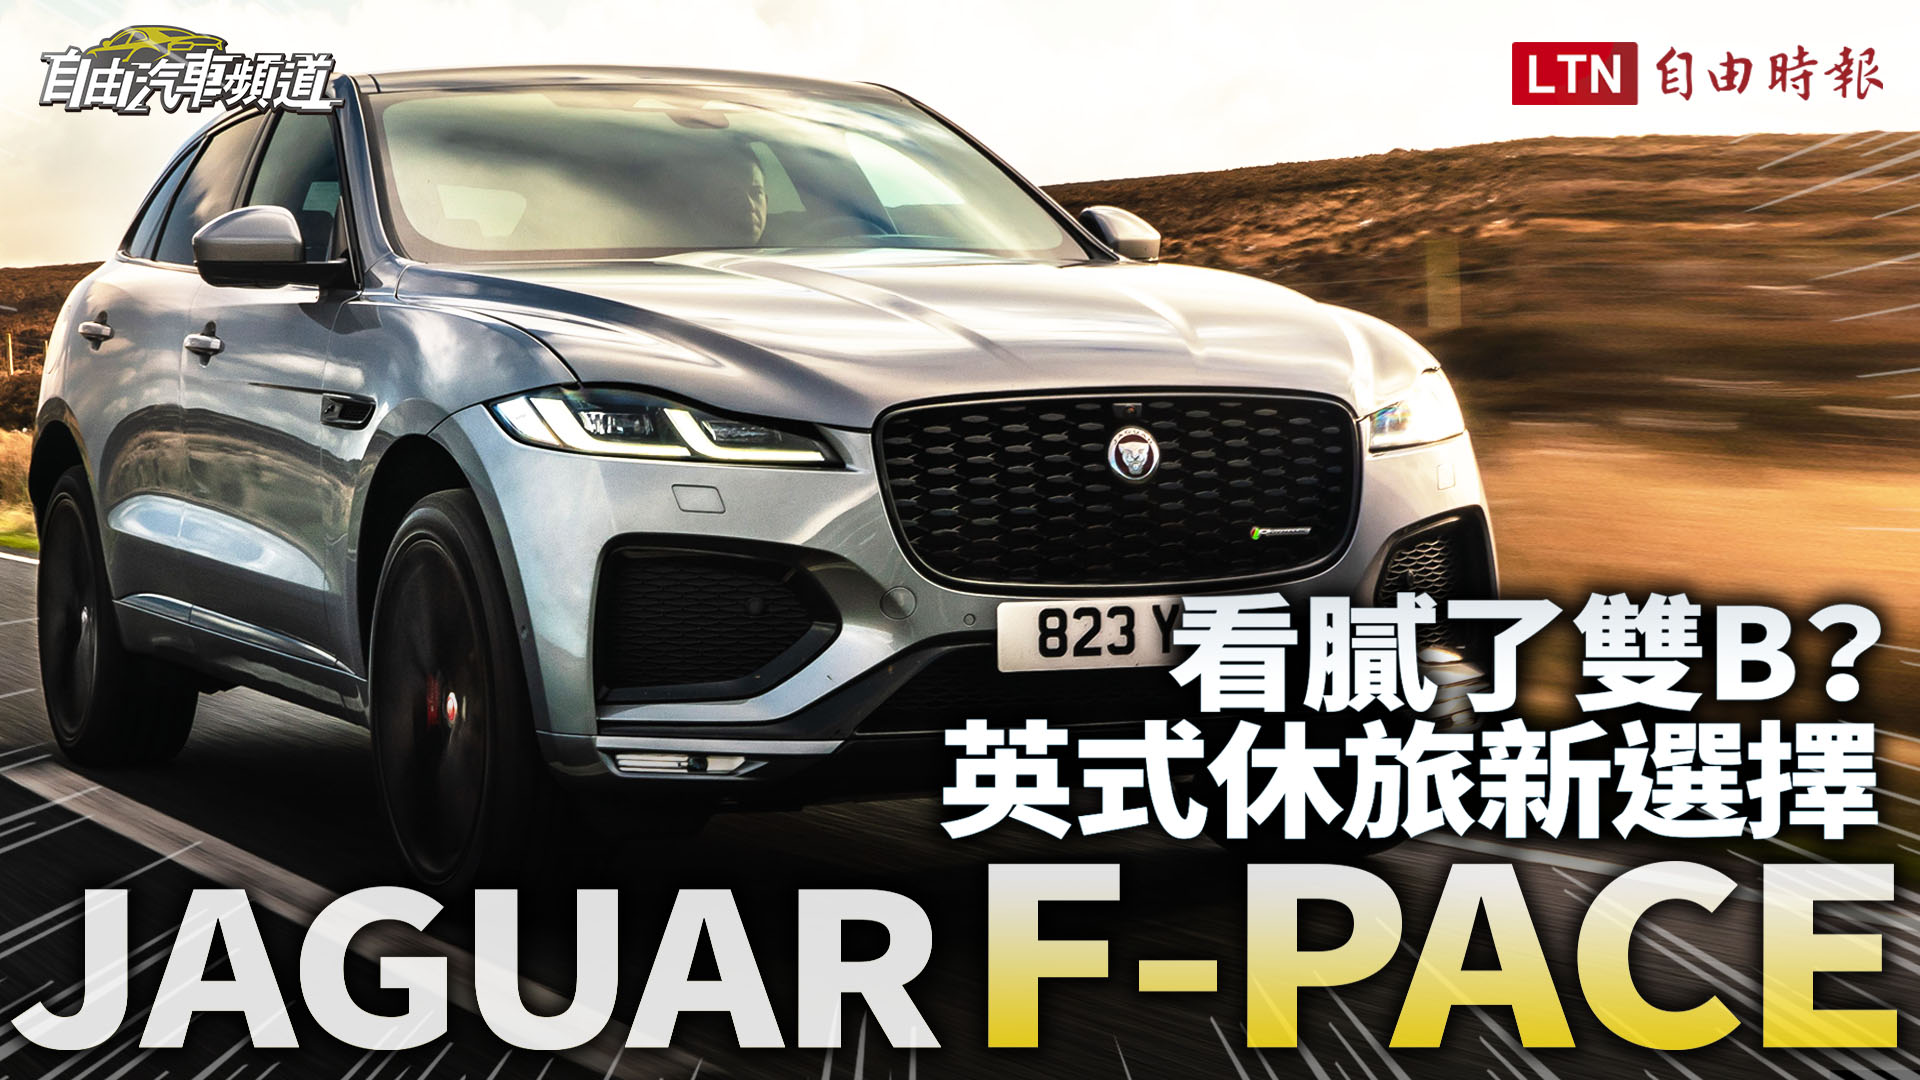 〈影片〉媲美大改款的內在美！Jaguar F-PACE 試駕報告